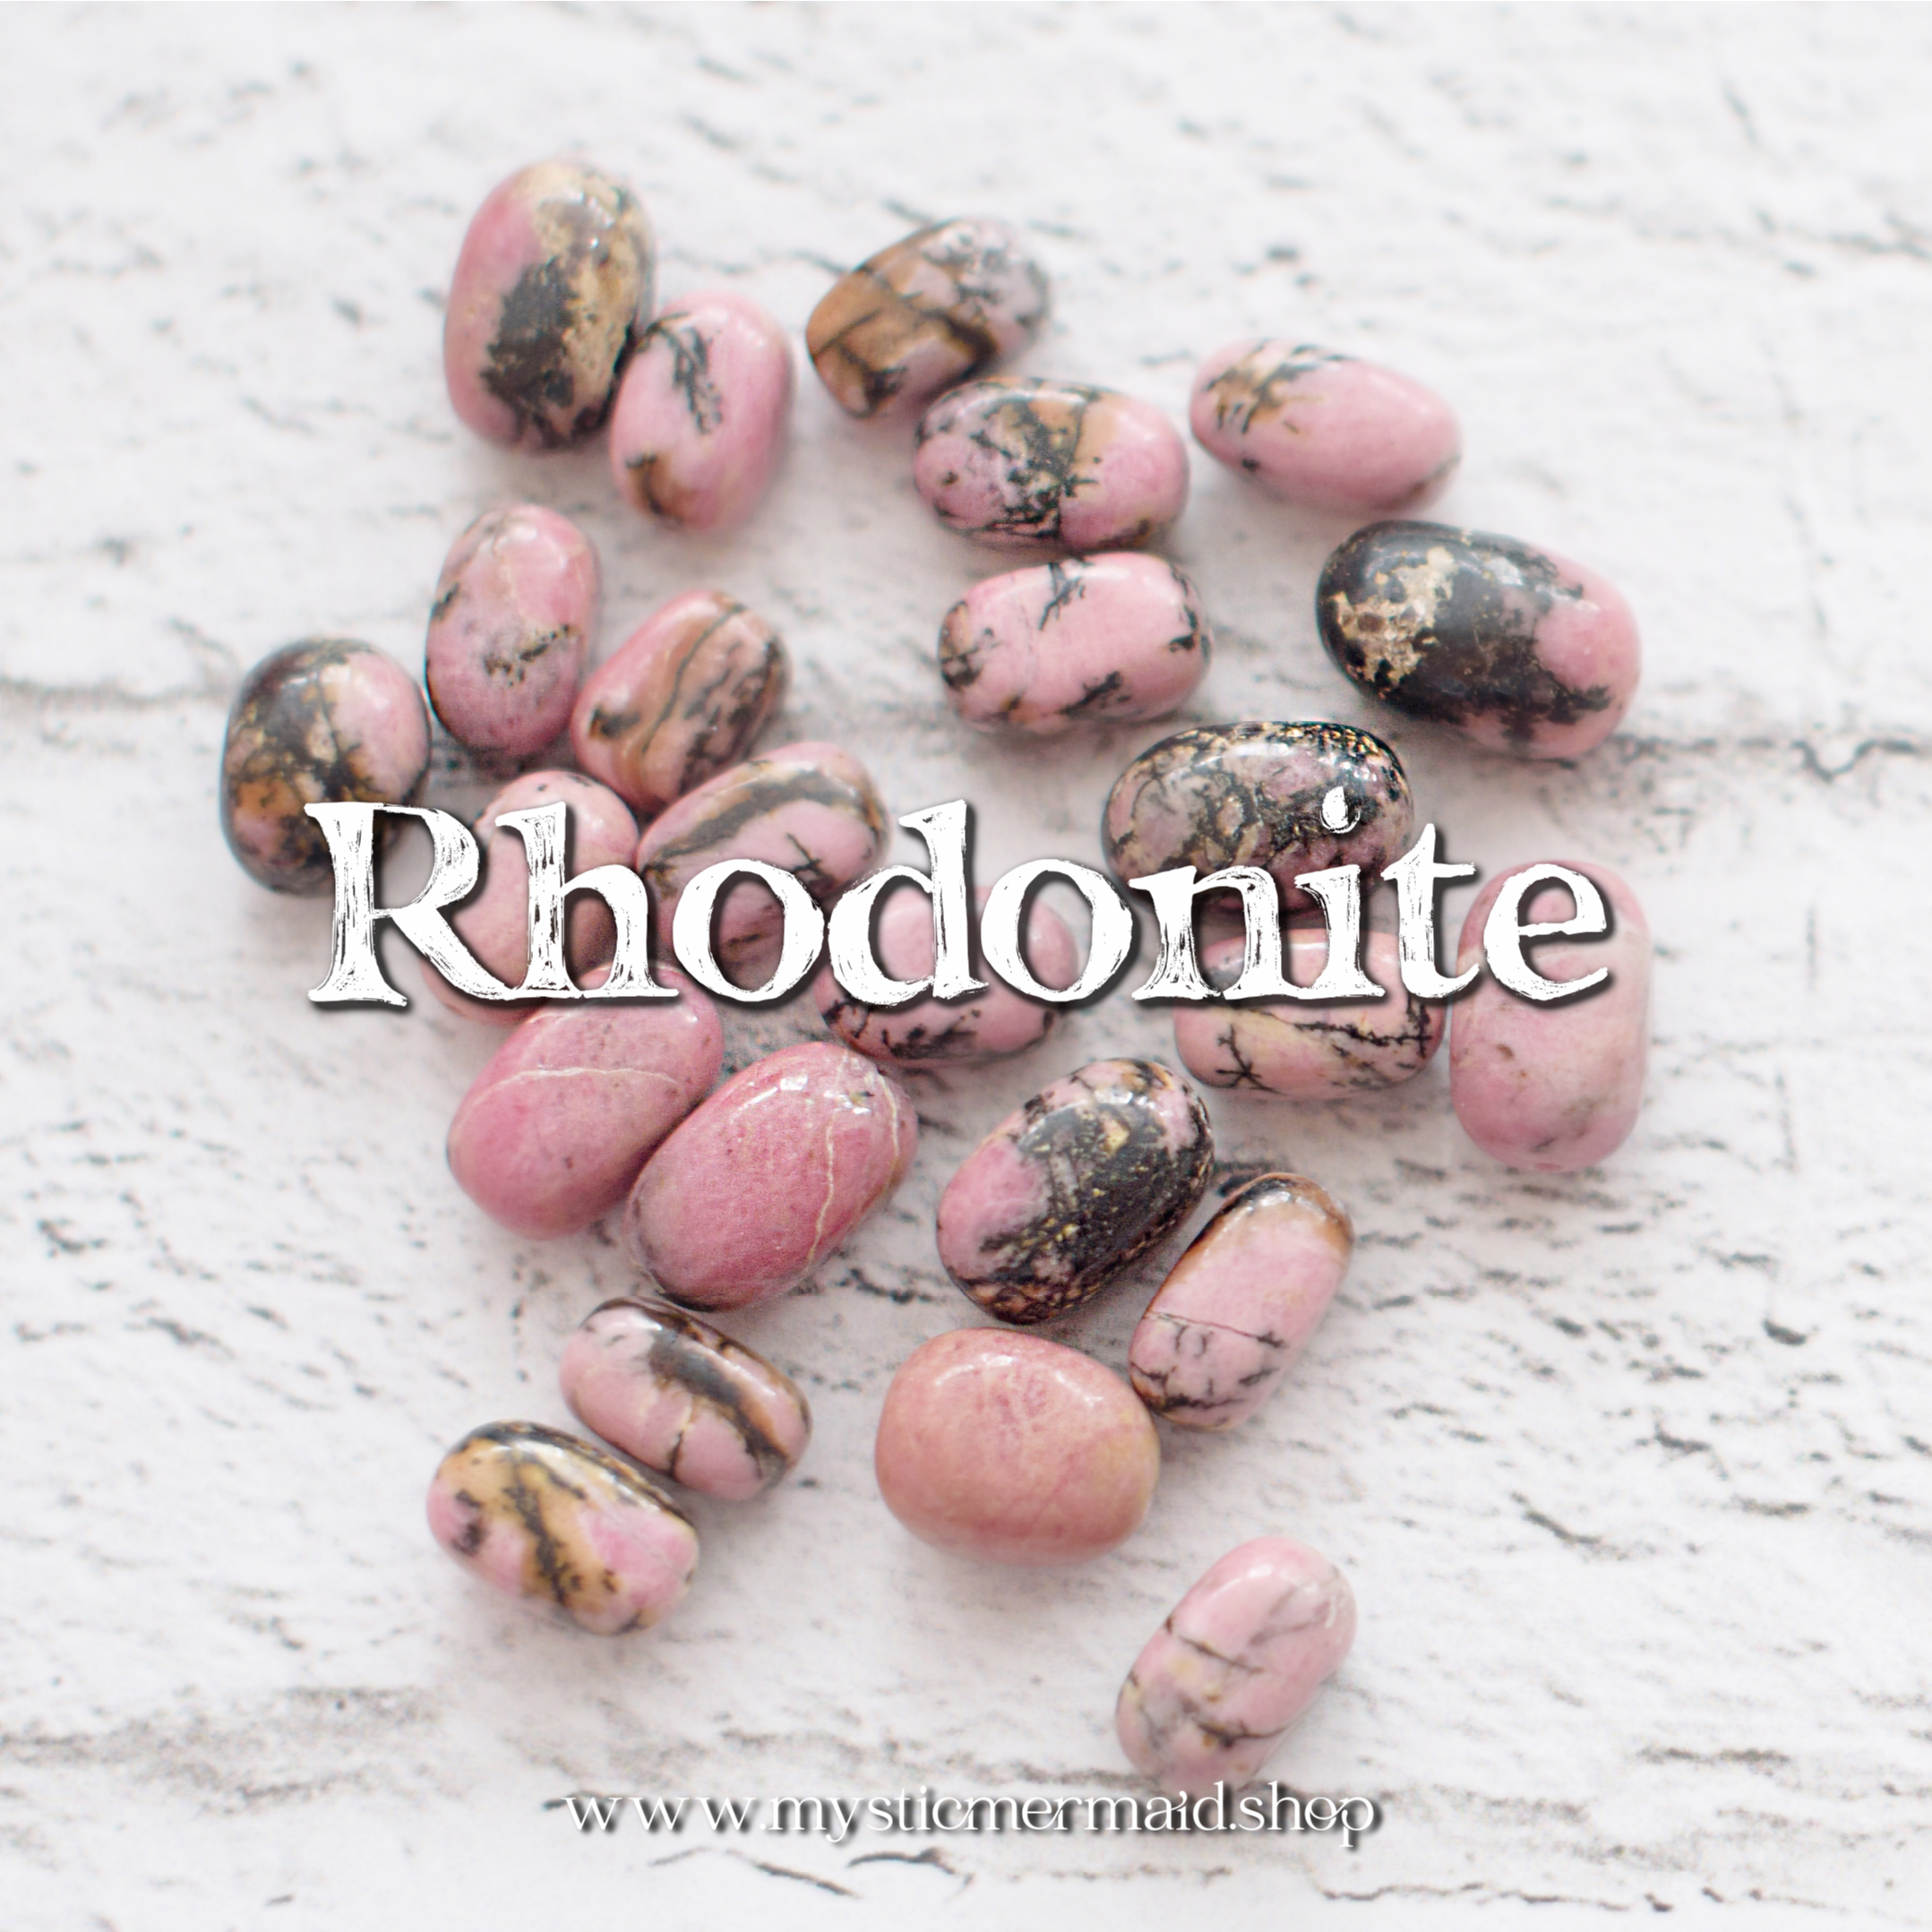 Rhodonite